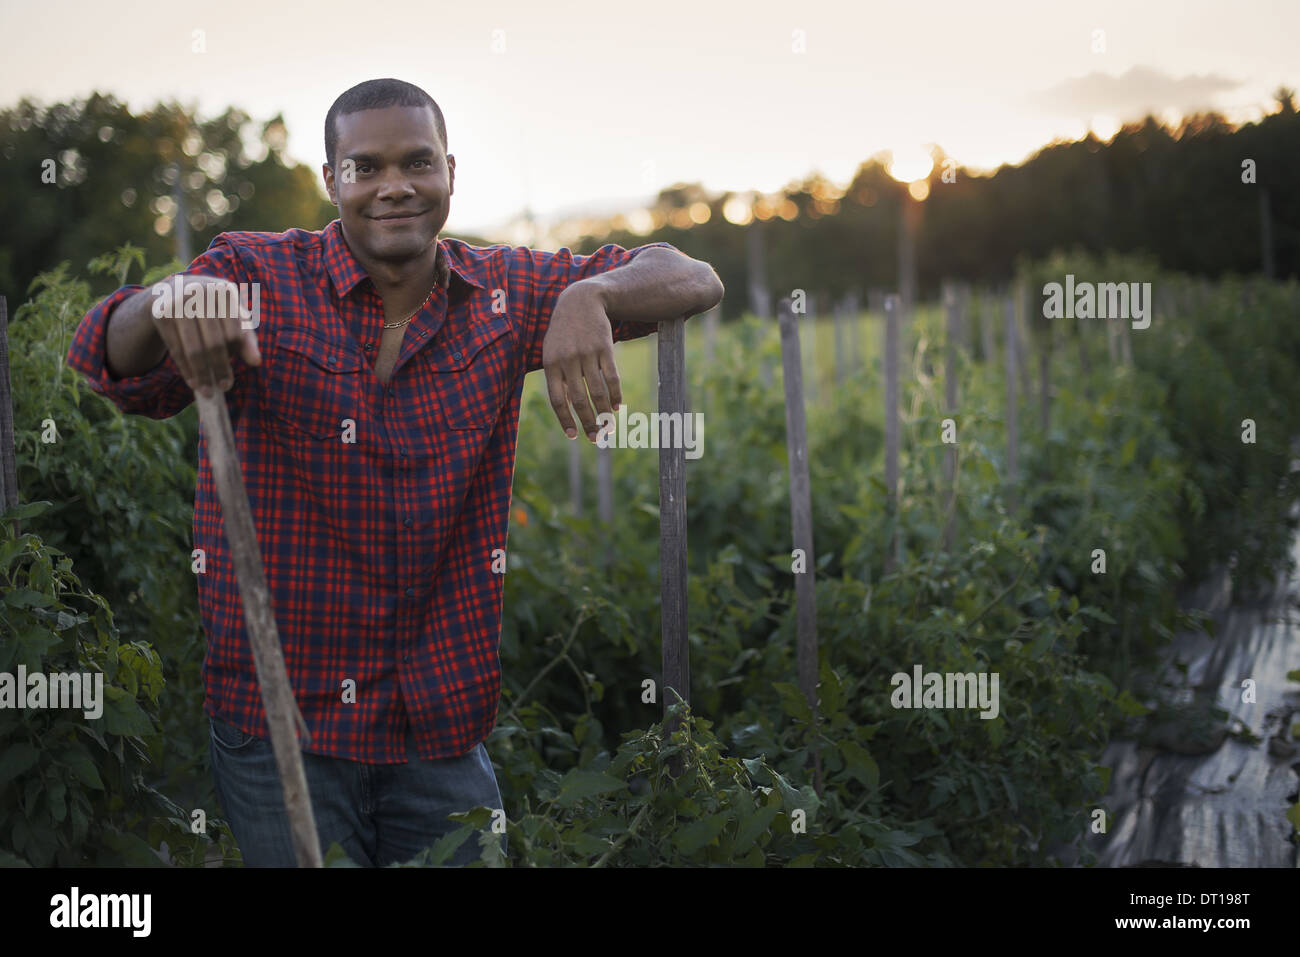 Woodstock New York STATI UNITI D'AMERICA agricoltore biologico di piante di pomodoro Foto Stock